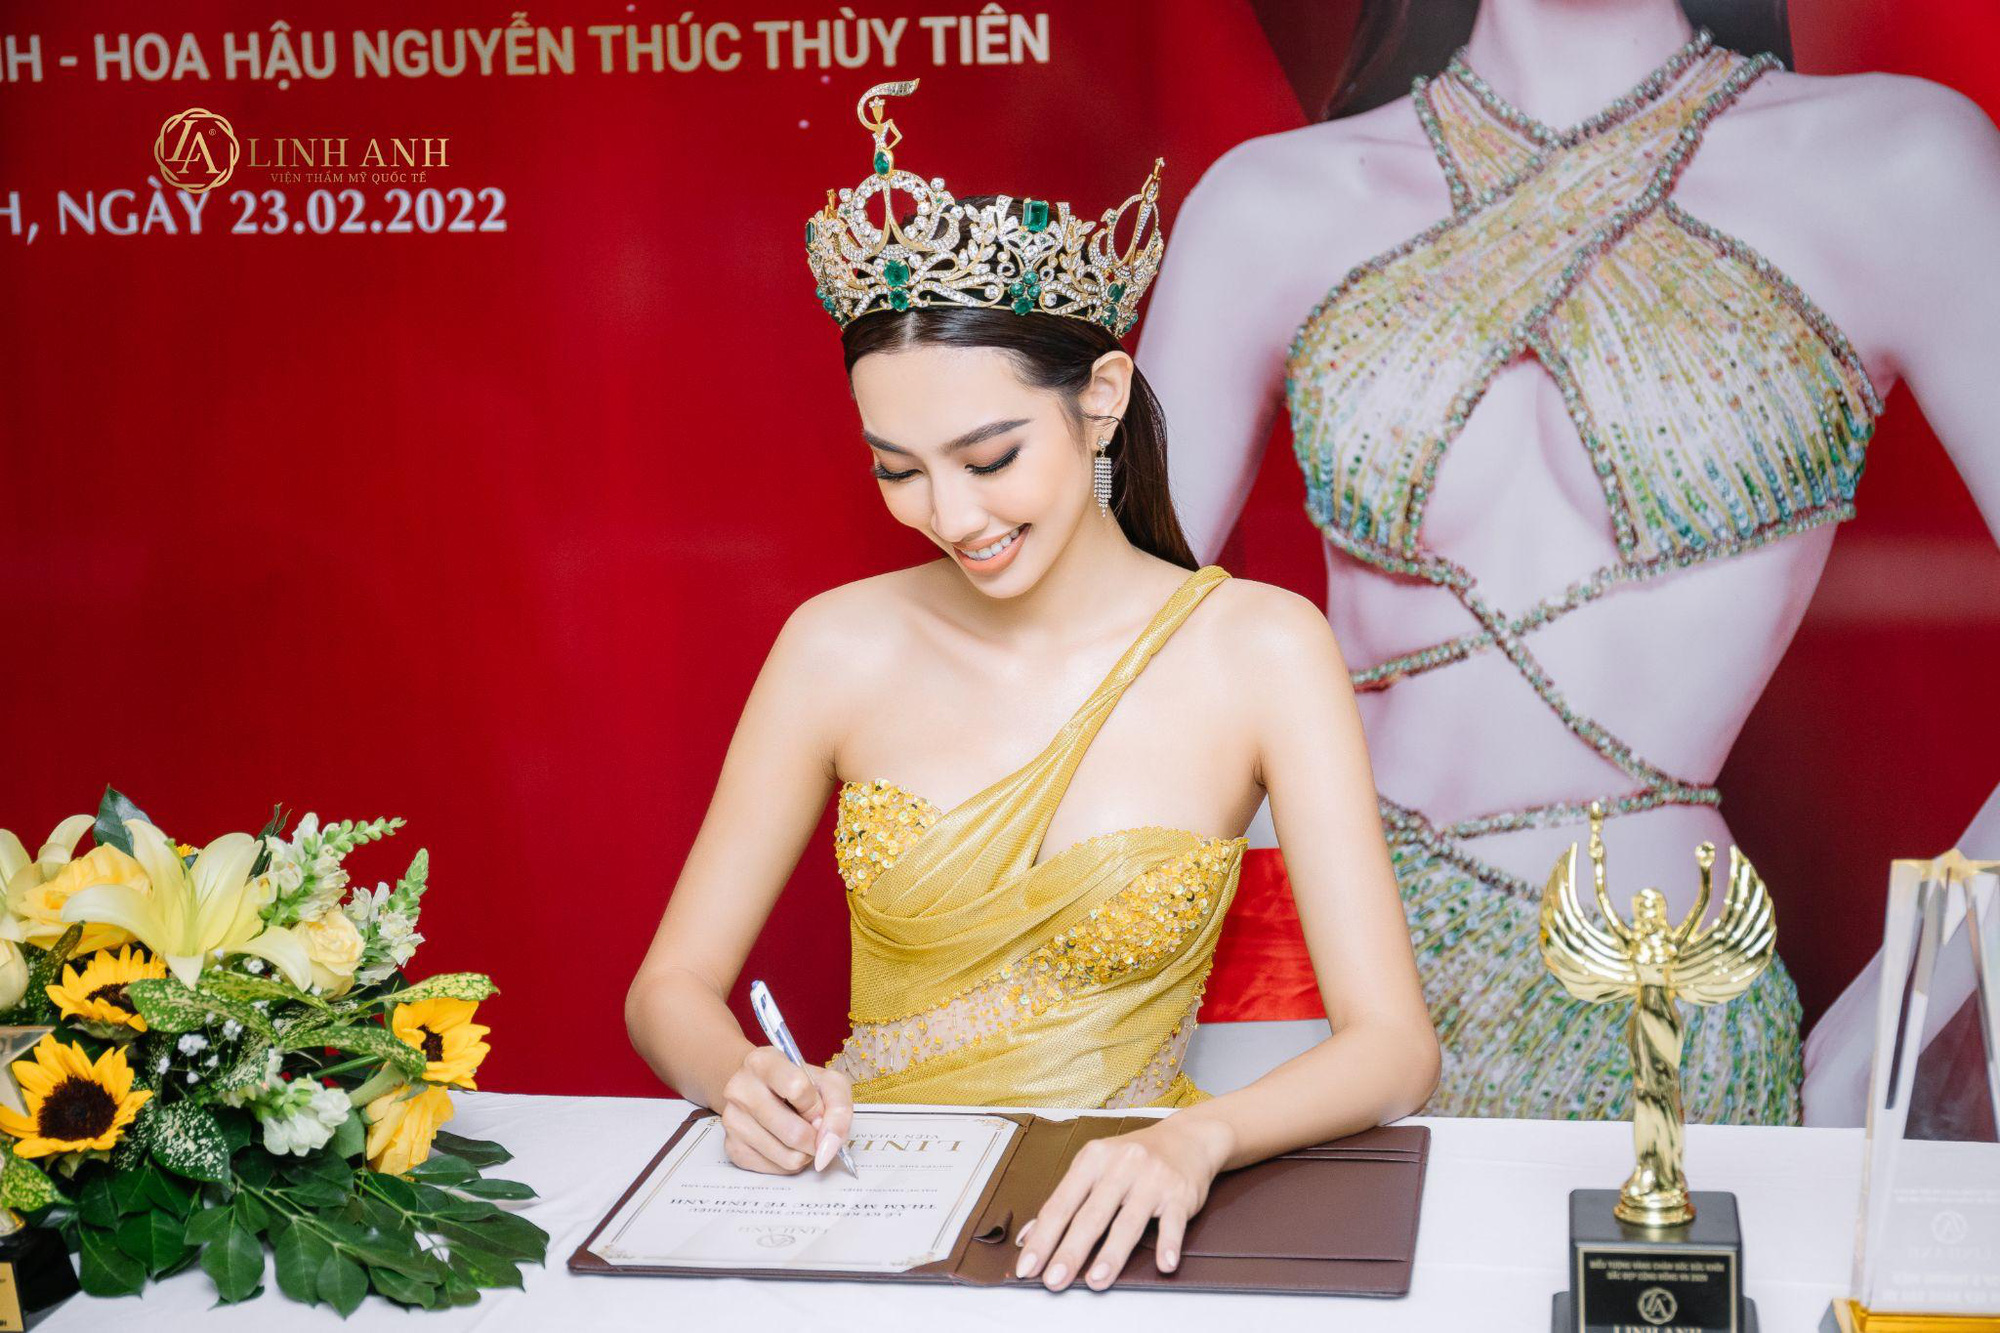 Bất ngờ trước lý do khiến Hoa hậu Thùy Tiên chọn Thẩm Mỹ Quốc Tế Linh Anh làm đại sứ thương hiệu - Ảnh 8.